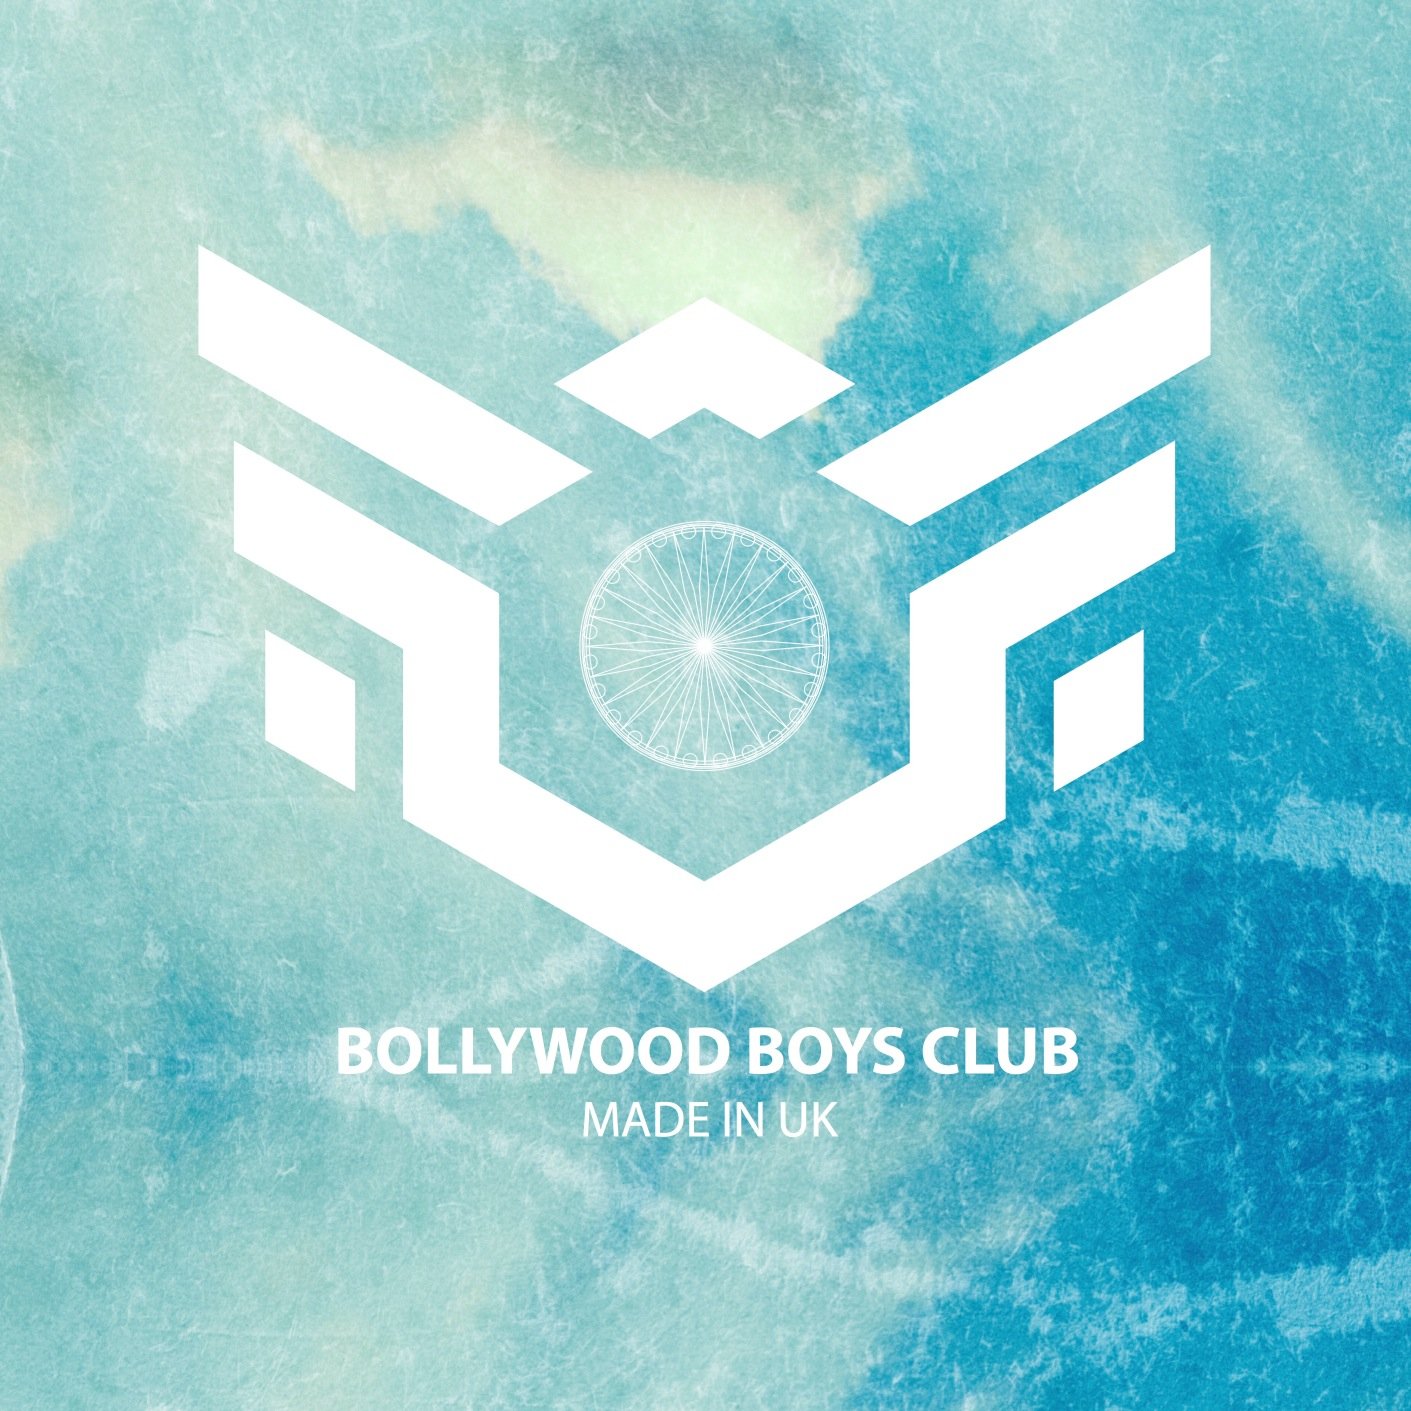 Bollywood boys club